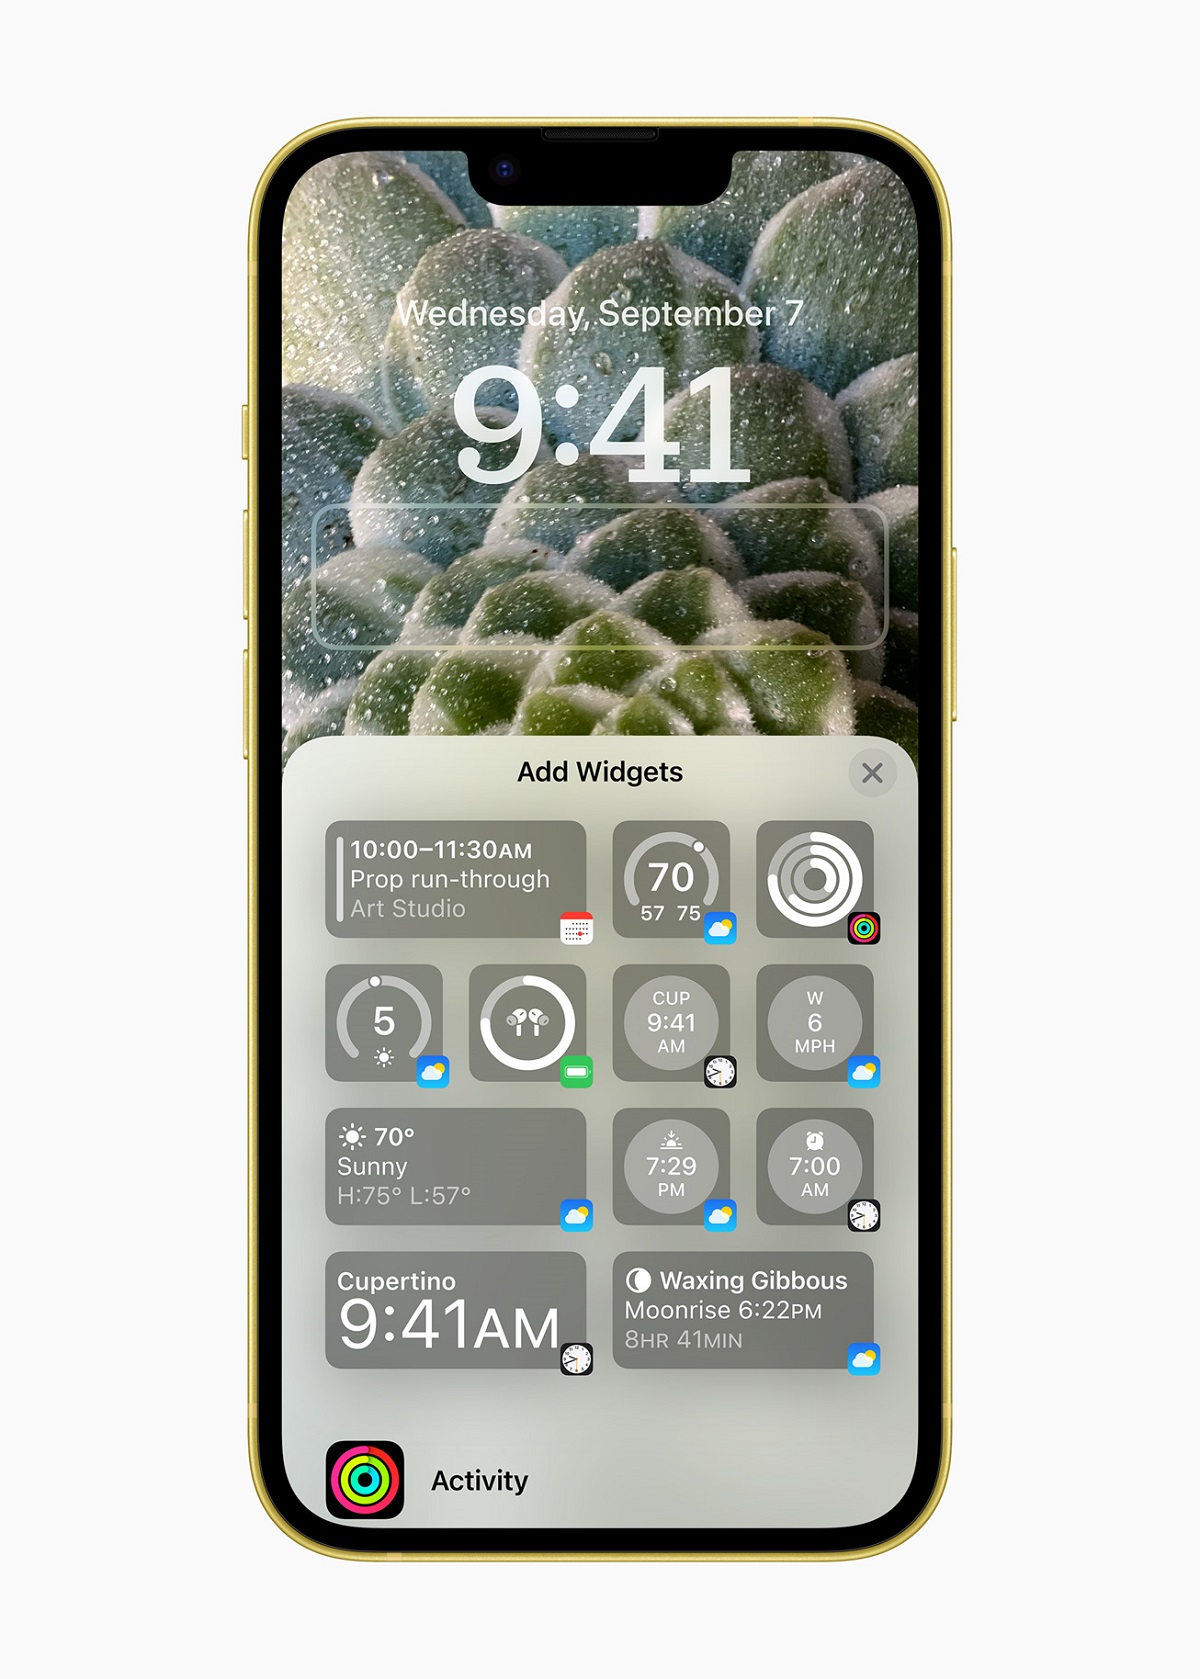 Пользователи iOS 16 могут персонализировать свой экран блокировки iPhone, выбрав обои, настроив цвета и шрифты и добавив виджеты с информацией из своих любимых приложений, такой как сегодняшние заголовки, погода и события календаря.